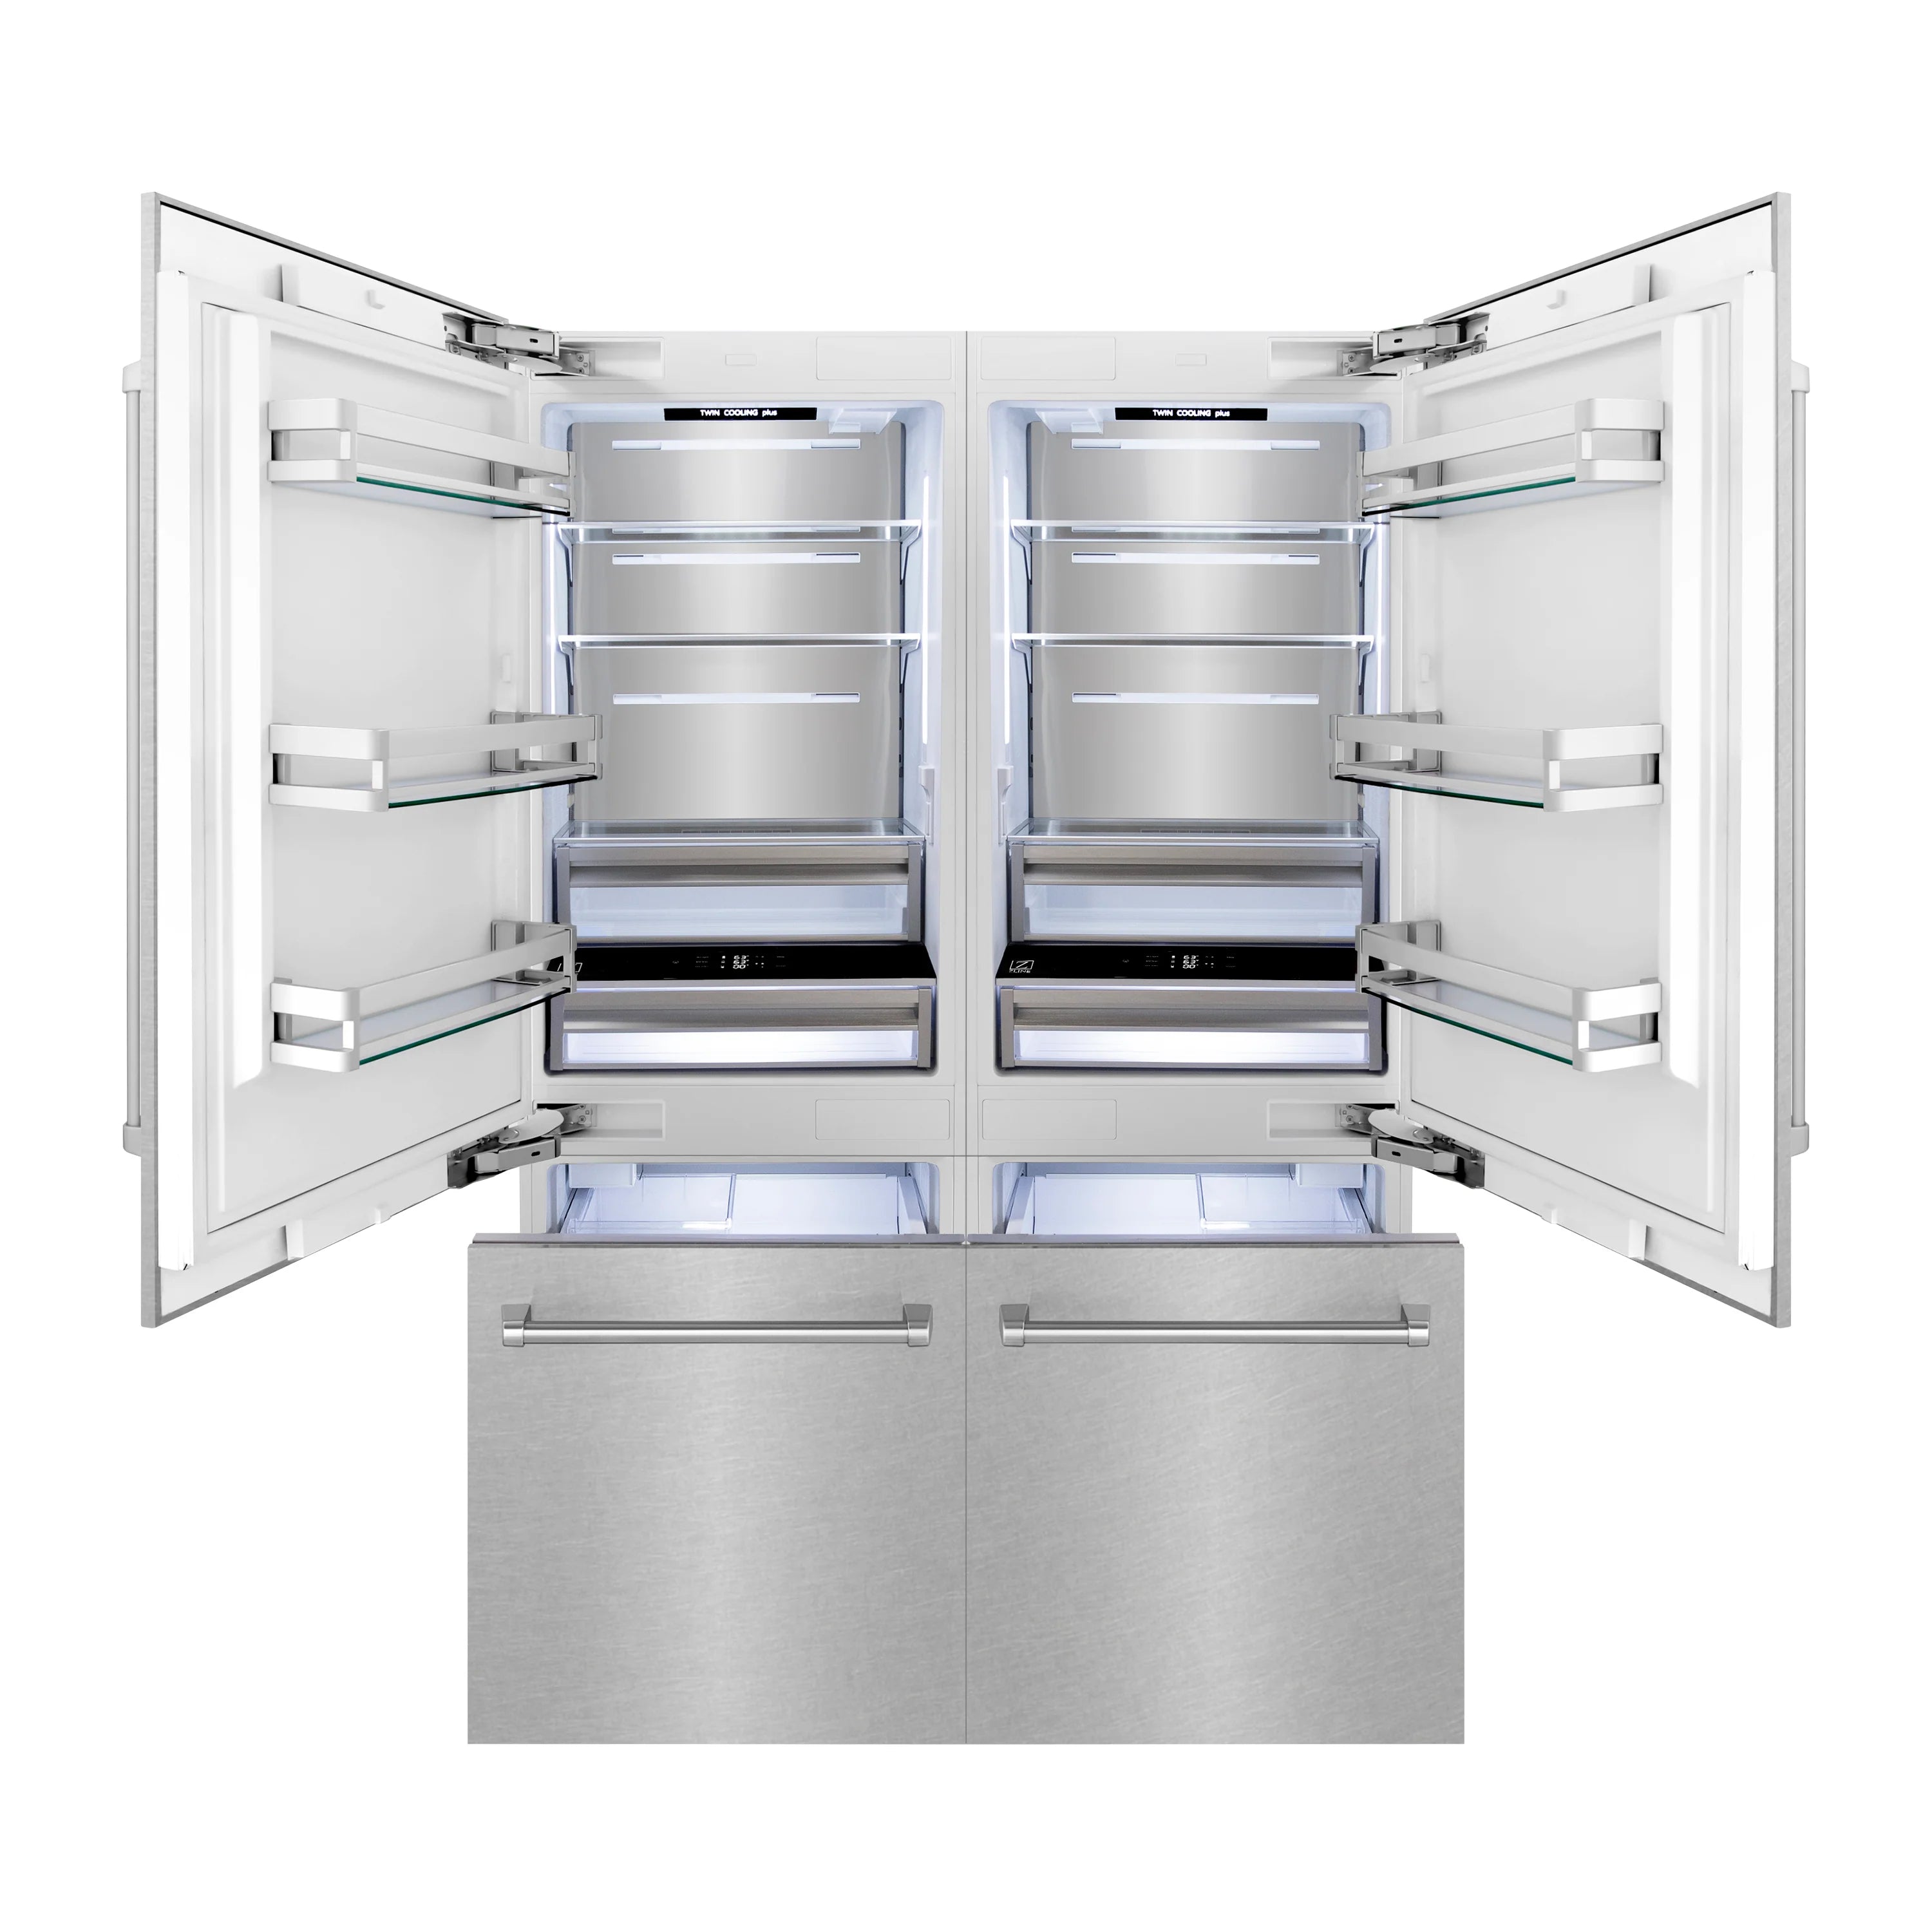 ZLINE 60" 32.2 cu. ft. Built-In 4-Door French Door Freezer Refrigerator with Internal Water and Ice Dispenser in Fingerprint Resistant Stainless Steel (RBIV-SN-60)